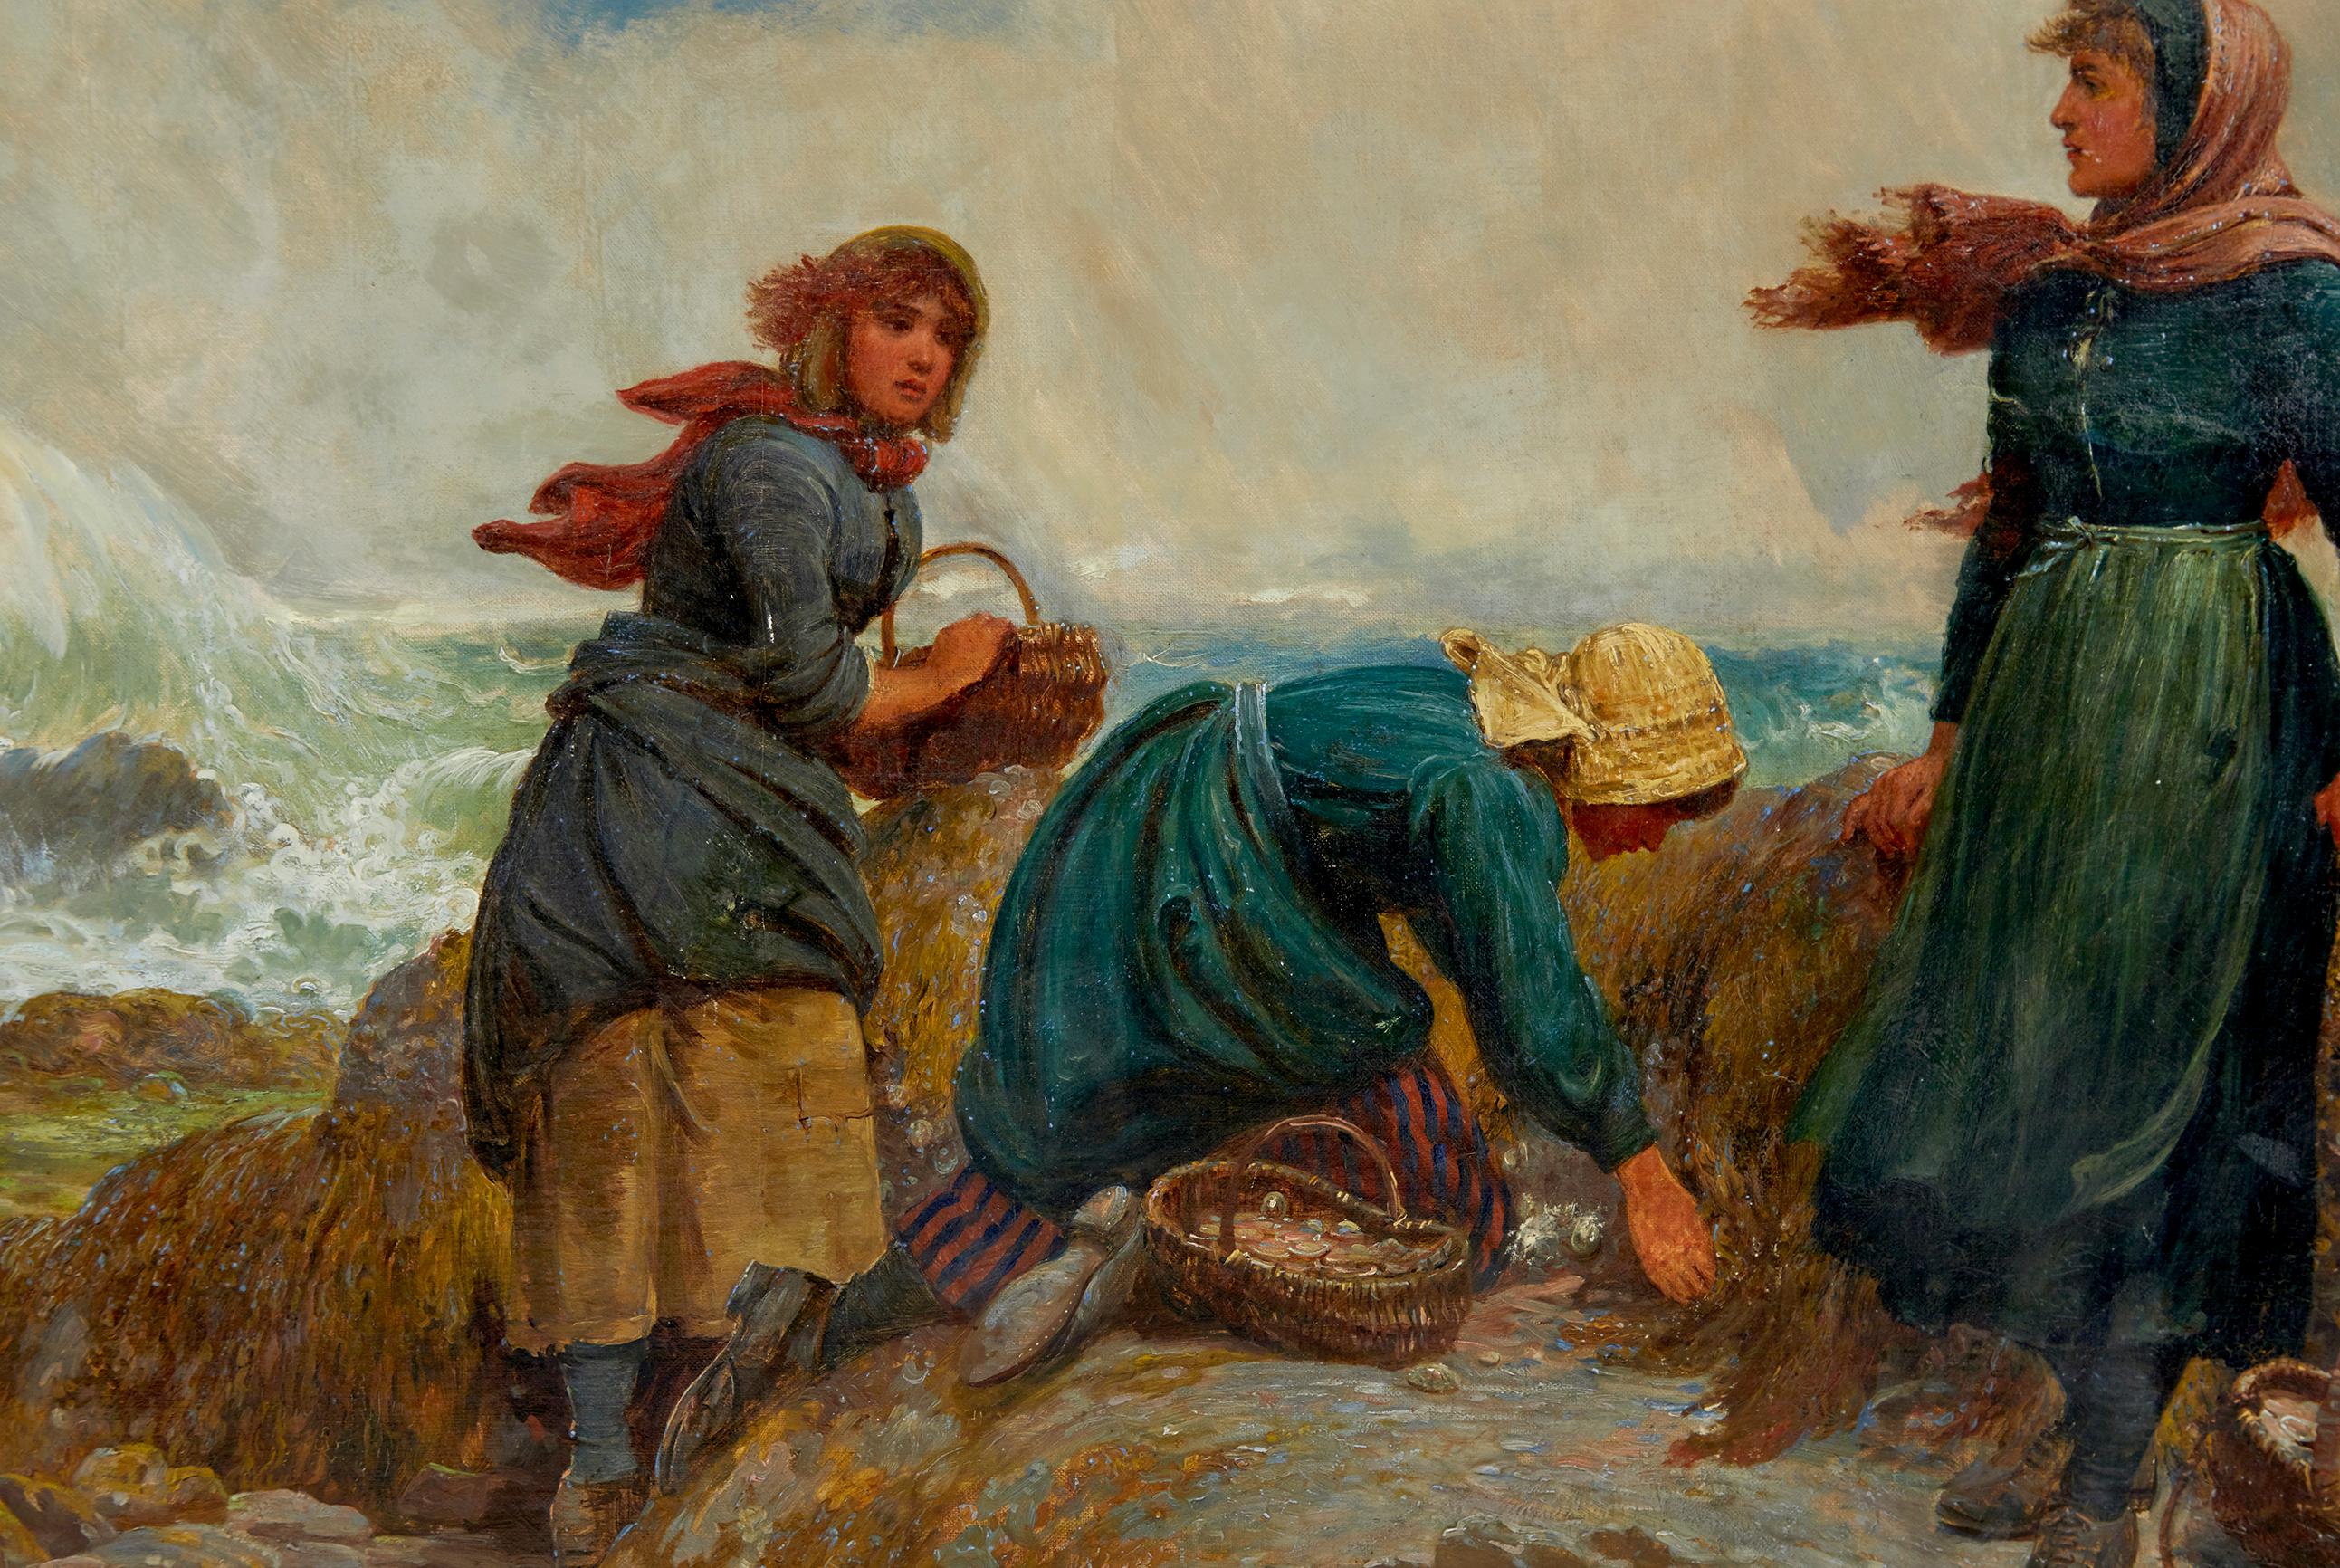 Peinture à l'huile du 19e siècle représentant des cueilleurs de flither du Yorkshire, réalisée par Robert Farren vers 1890.

Peint par Robert B. Farren (1832-1912)

Il s'agit d'une peinture à l'huile habilement exécutée et colorée de Robert Farren